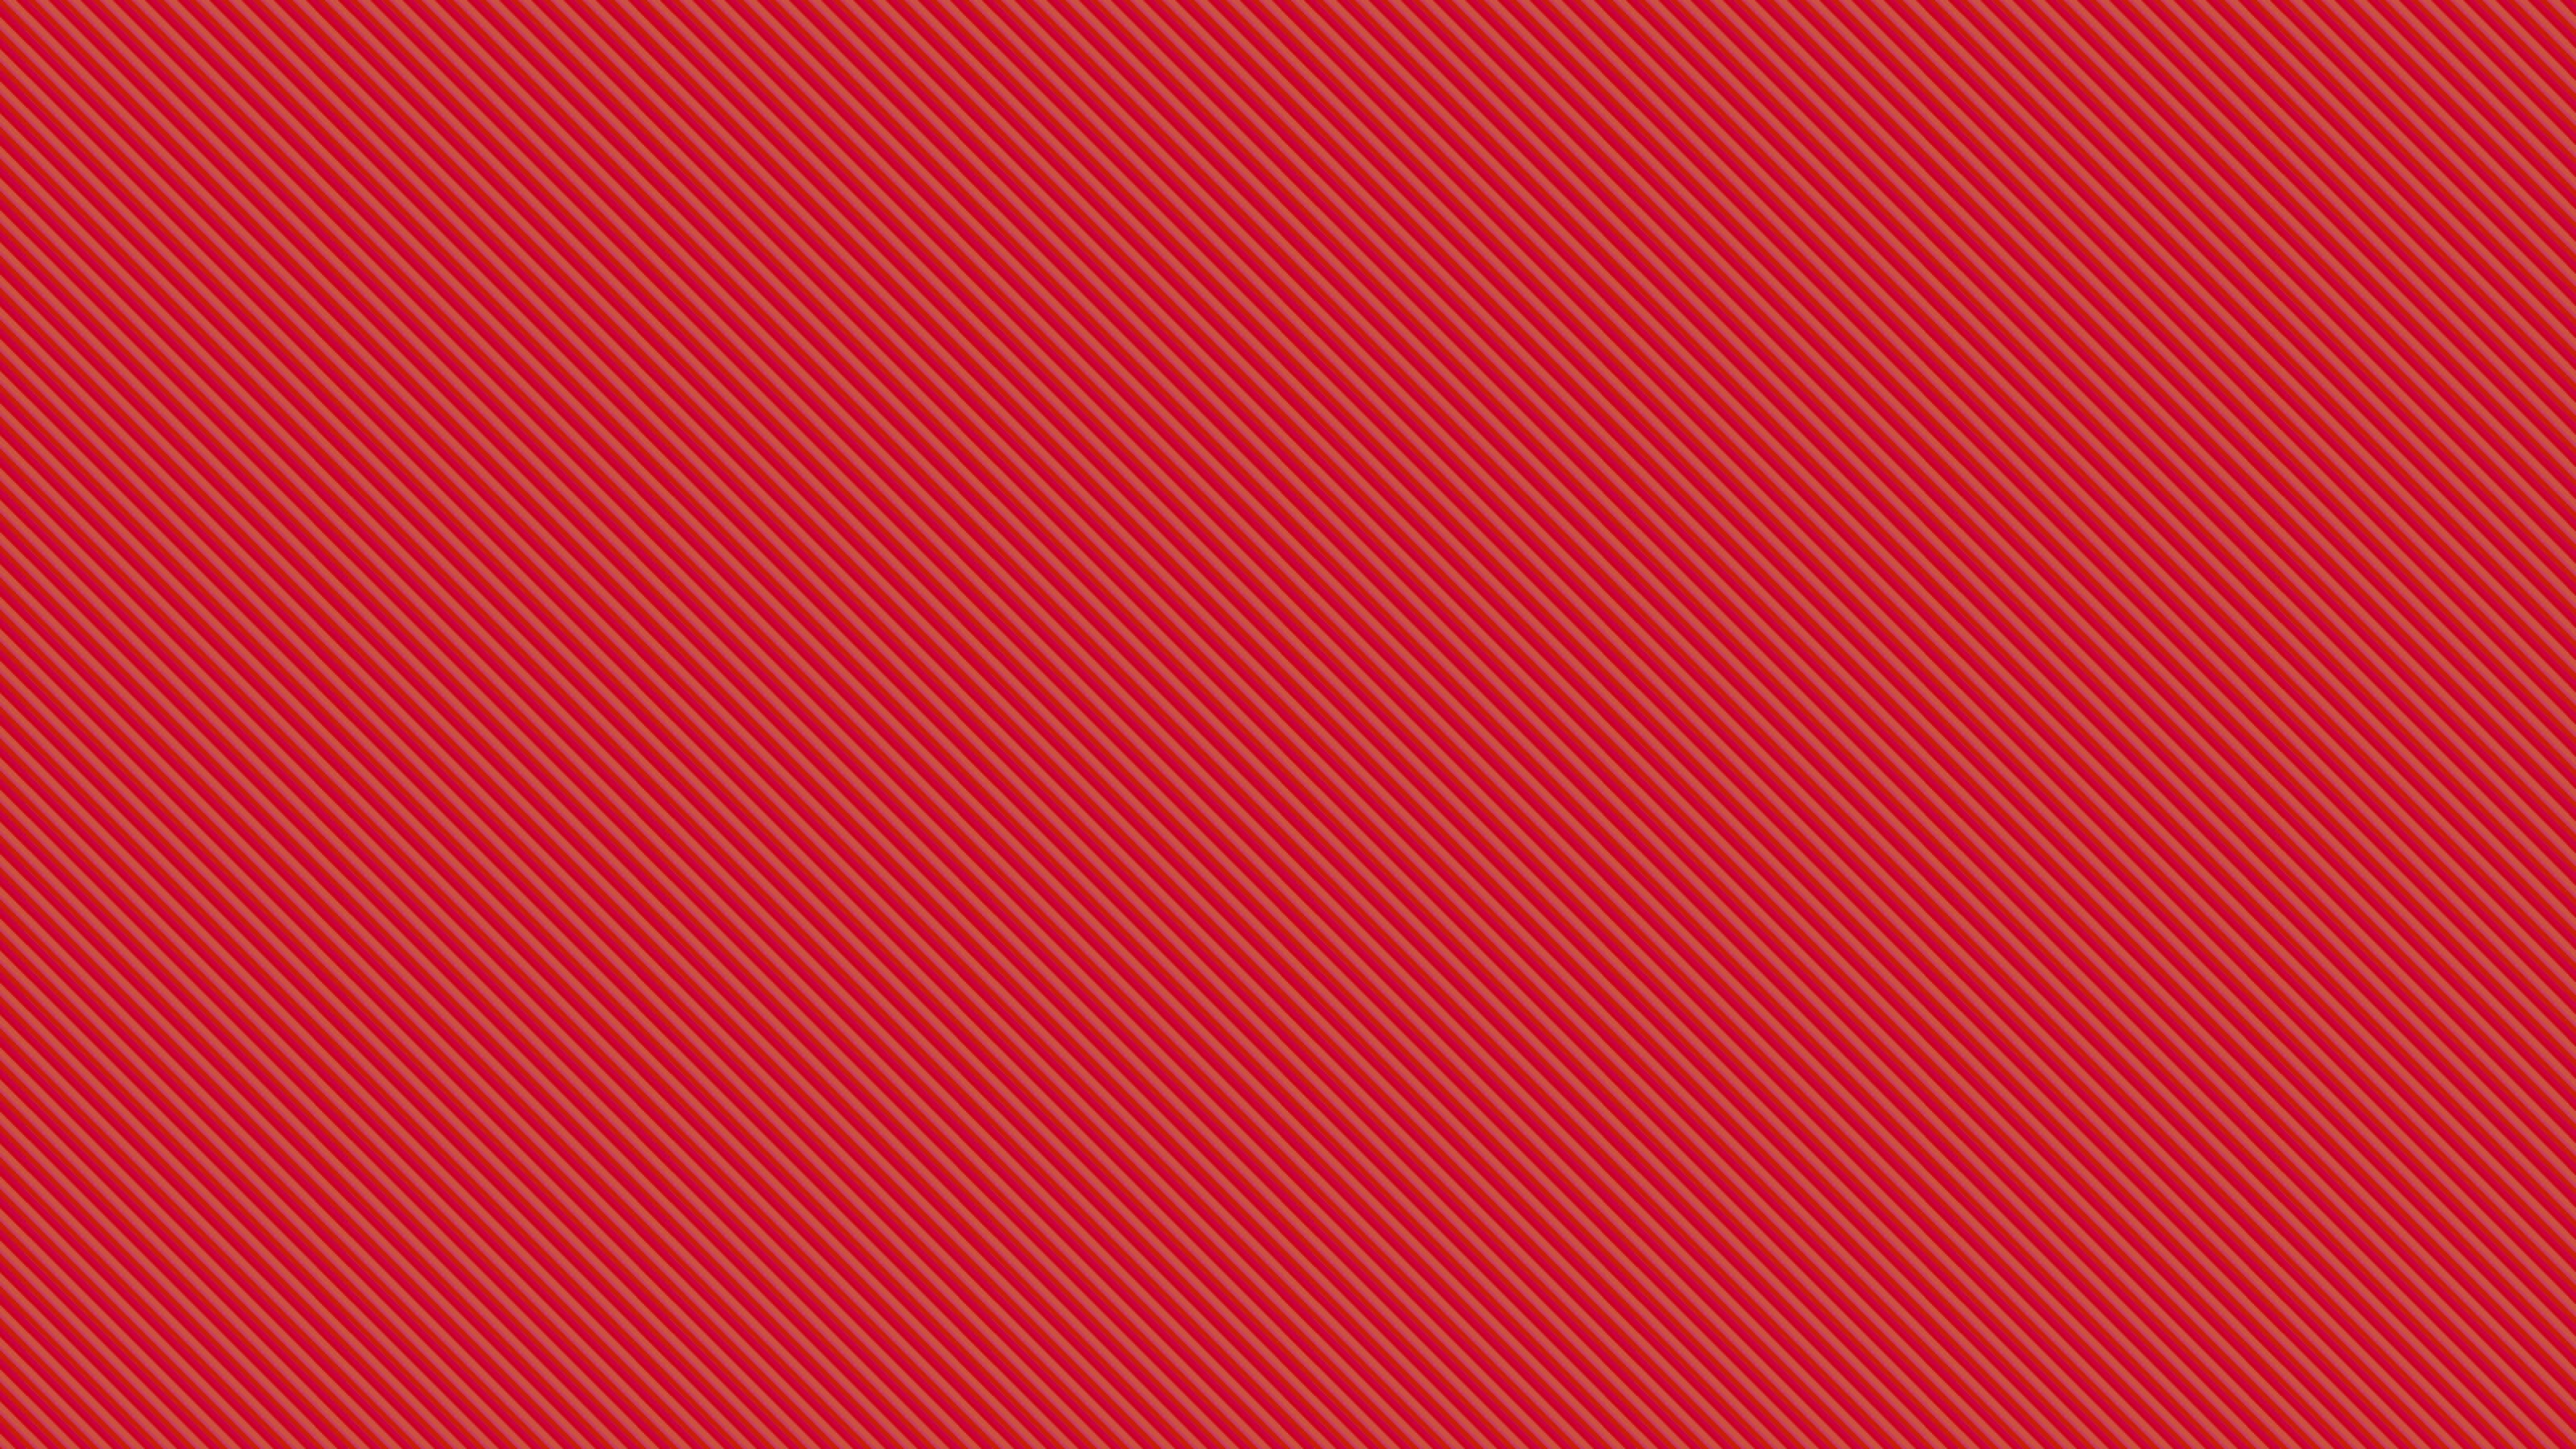 Textil de Rayas Rojas y Blancas. Wallpaper in 3840x2160 Resolution